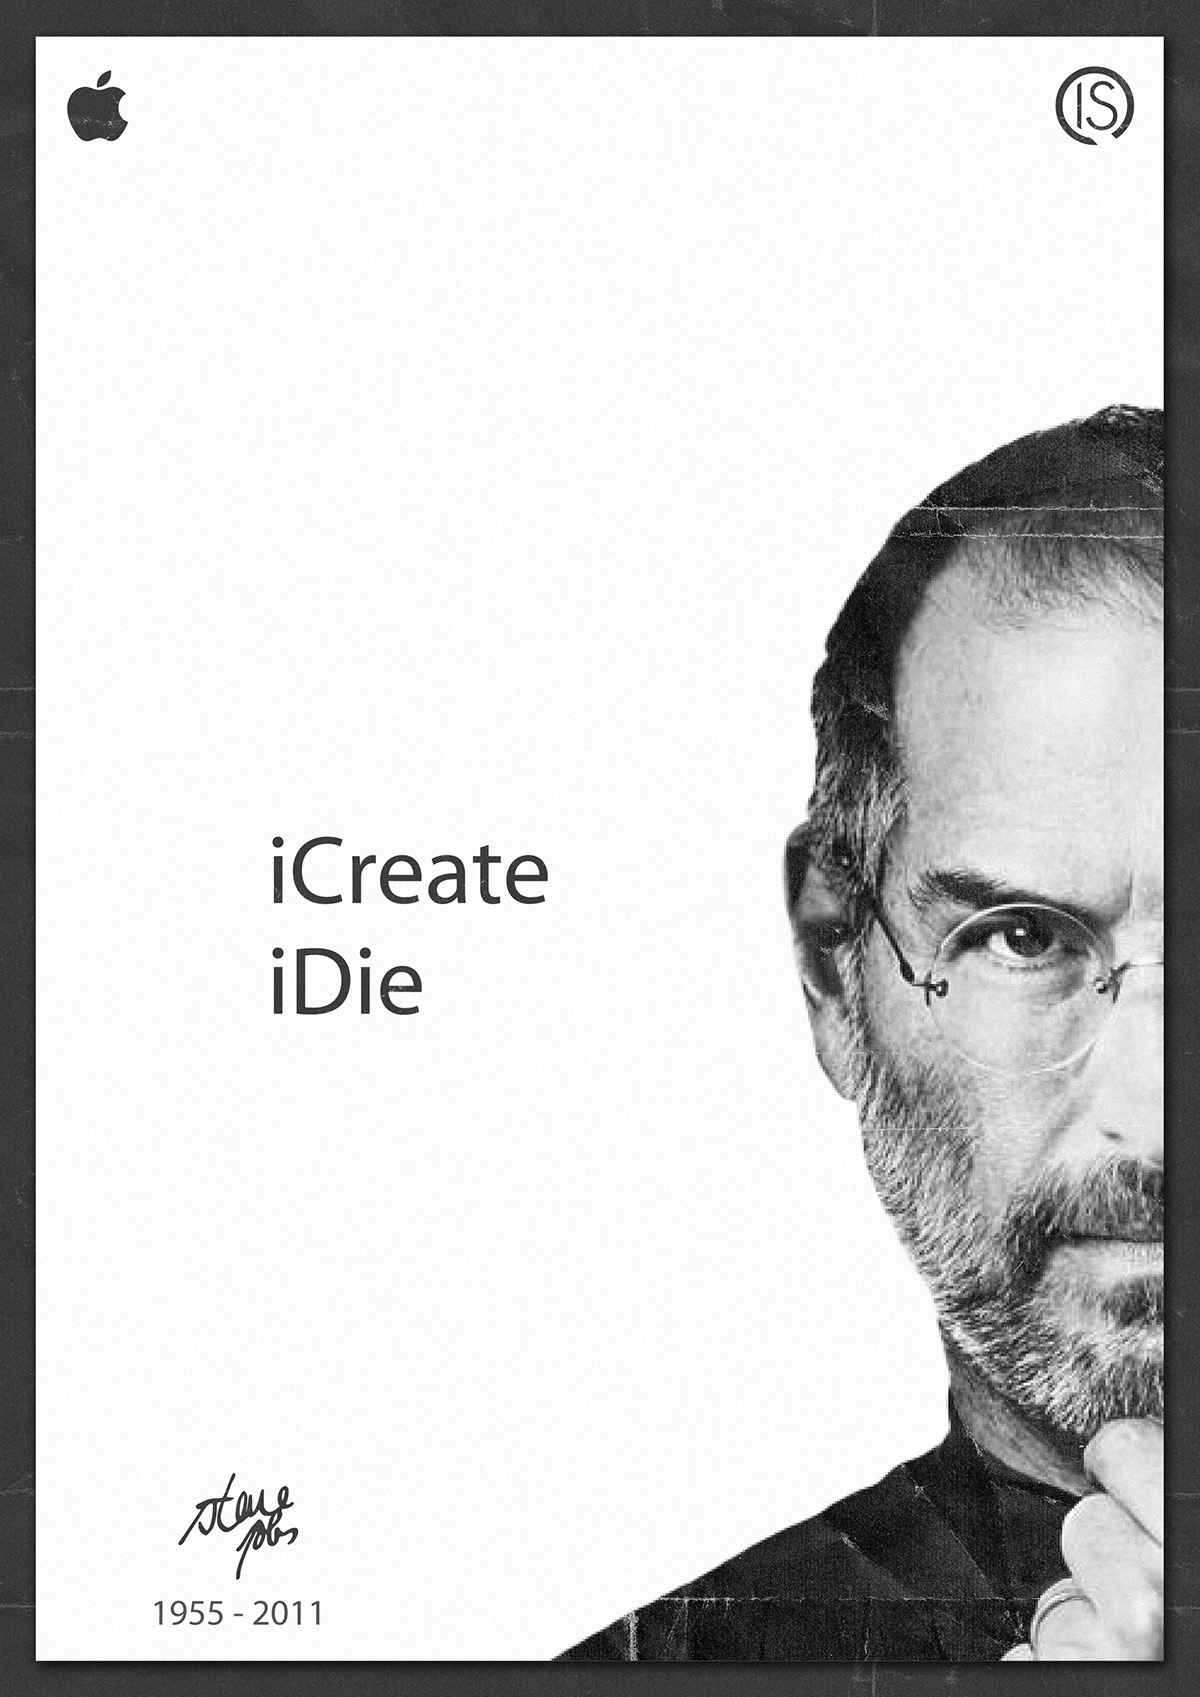 steve Jobs steven apple paul mac death iDie iCreate